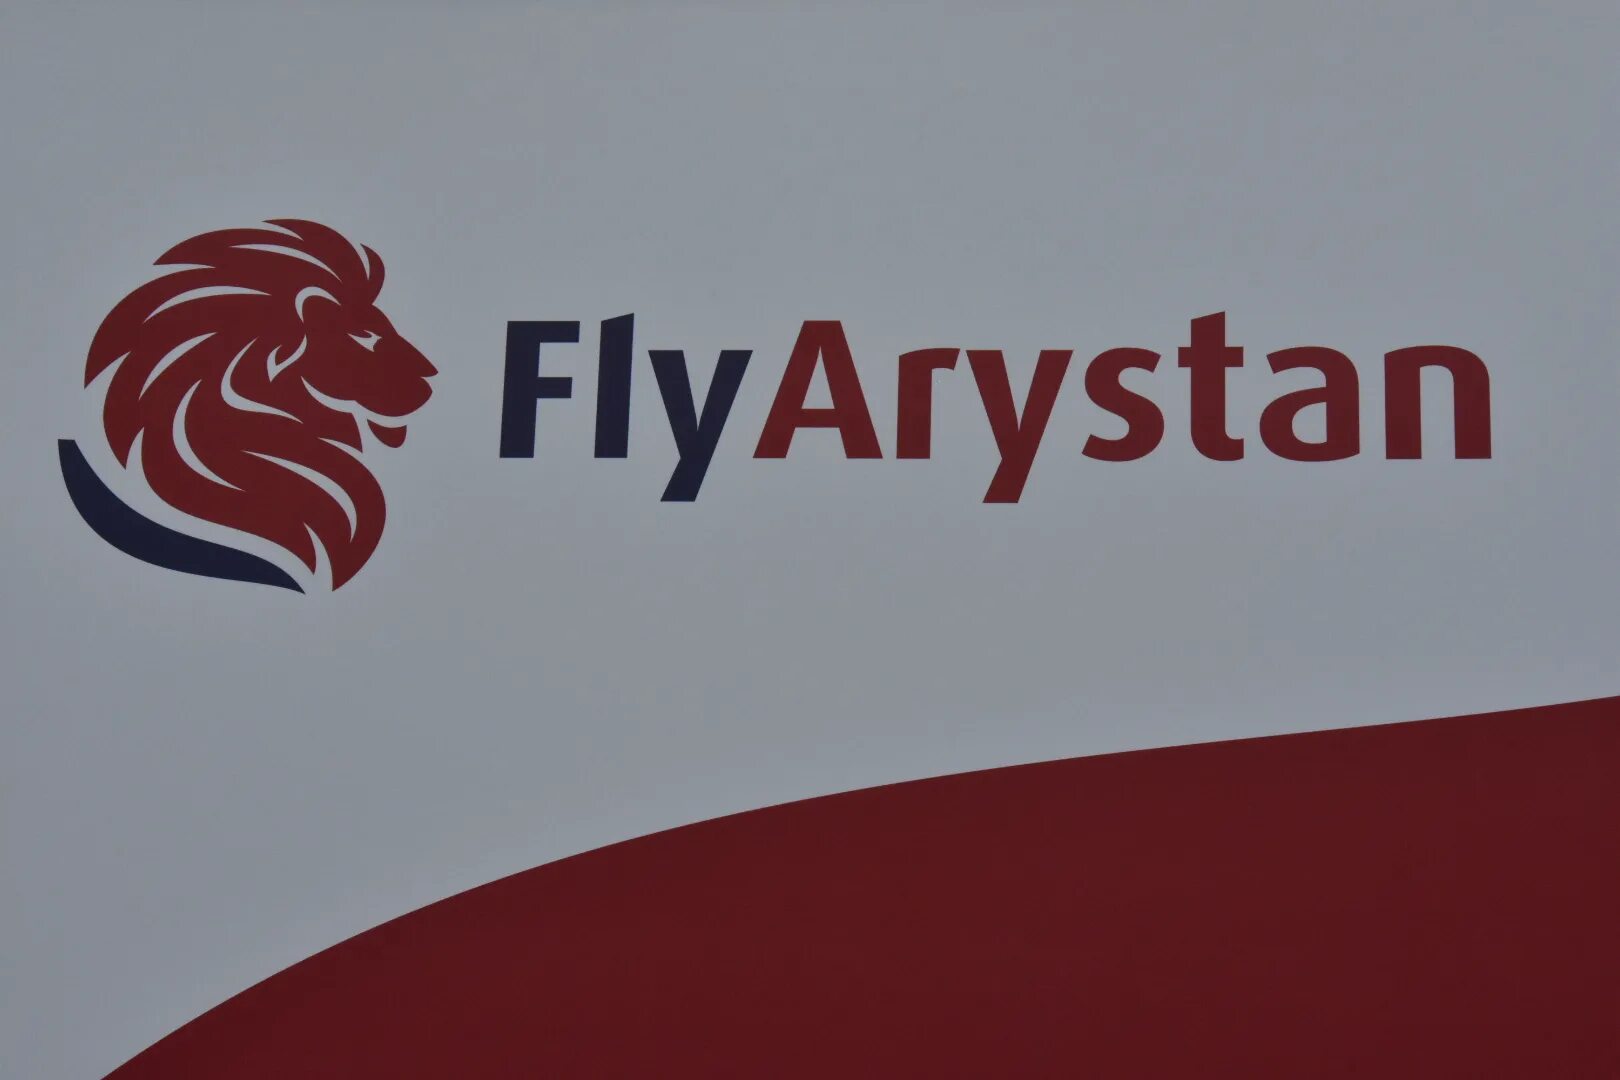 Fly Arystan. Flyarystan лого. Fly Arystan логотип. Авиакомпания flyarystan логотип.